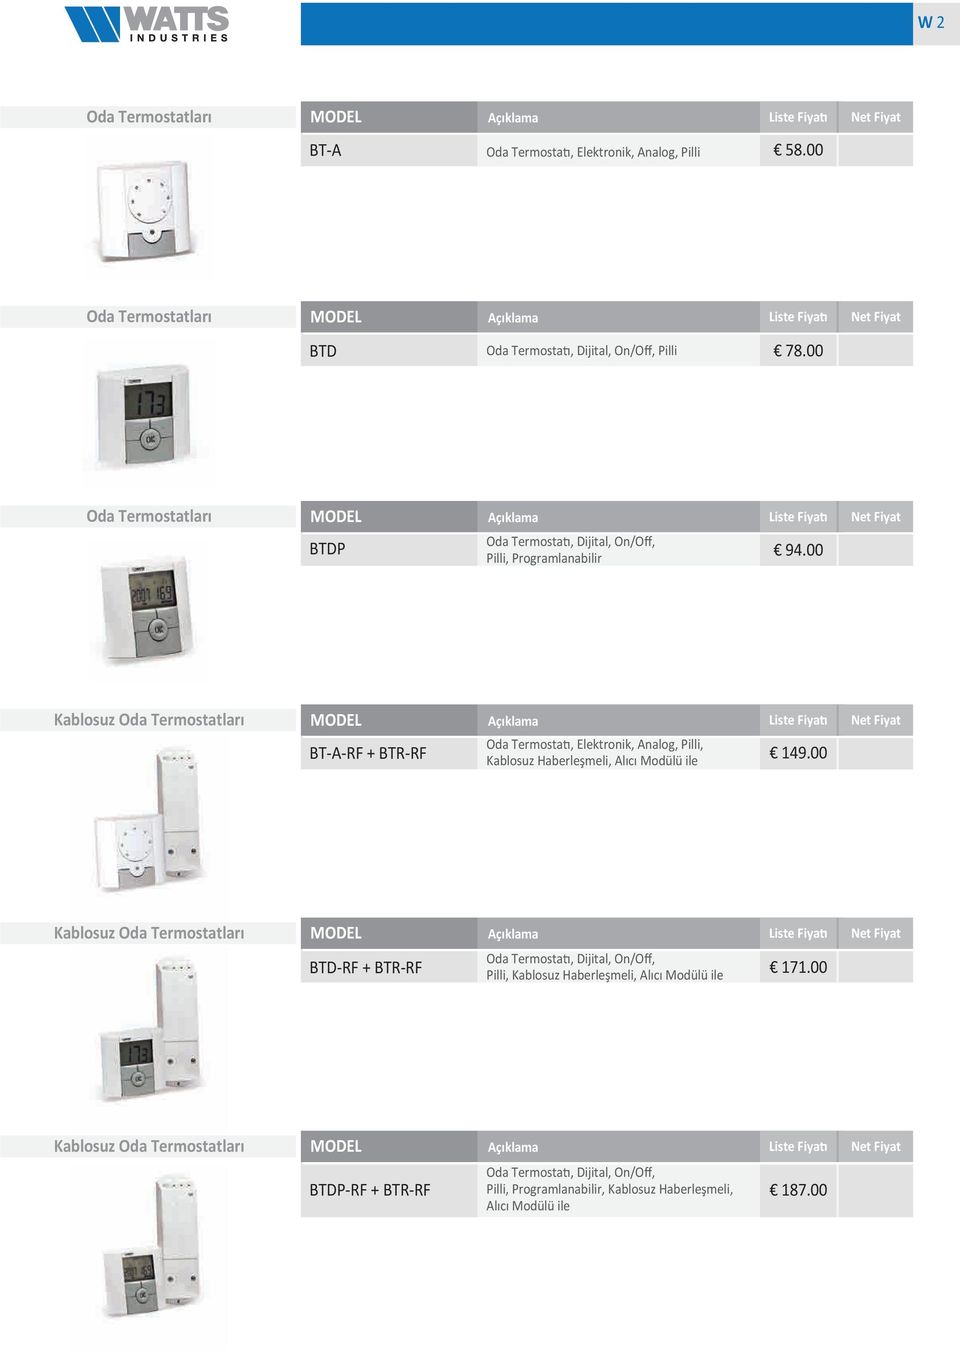 00 Oda Termostatları MODEL Açıklama Liste Fiyatı Net Fiyat Oda Termostatı, Dijital, On/Off, BTDP Pilli, Programlanabilir 94.